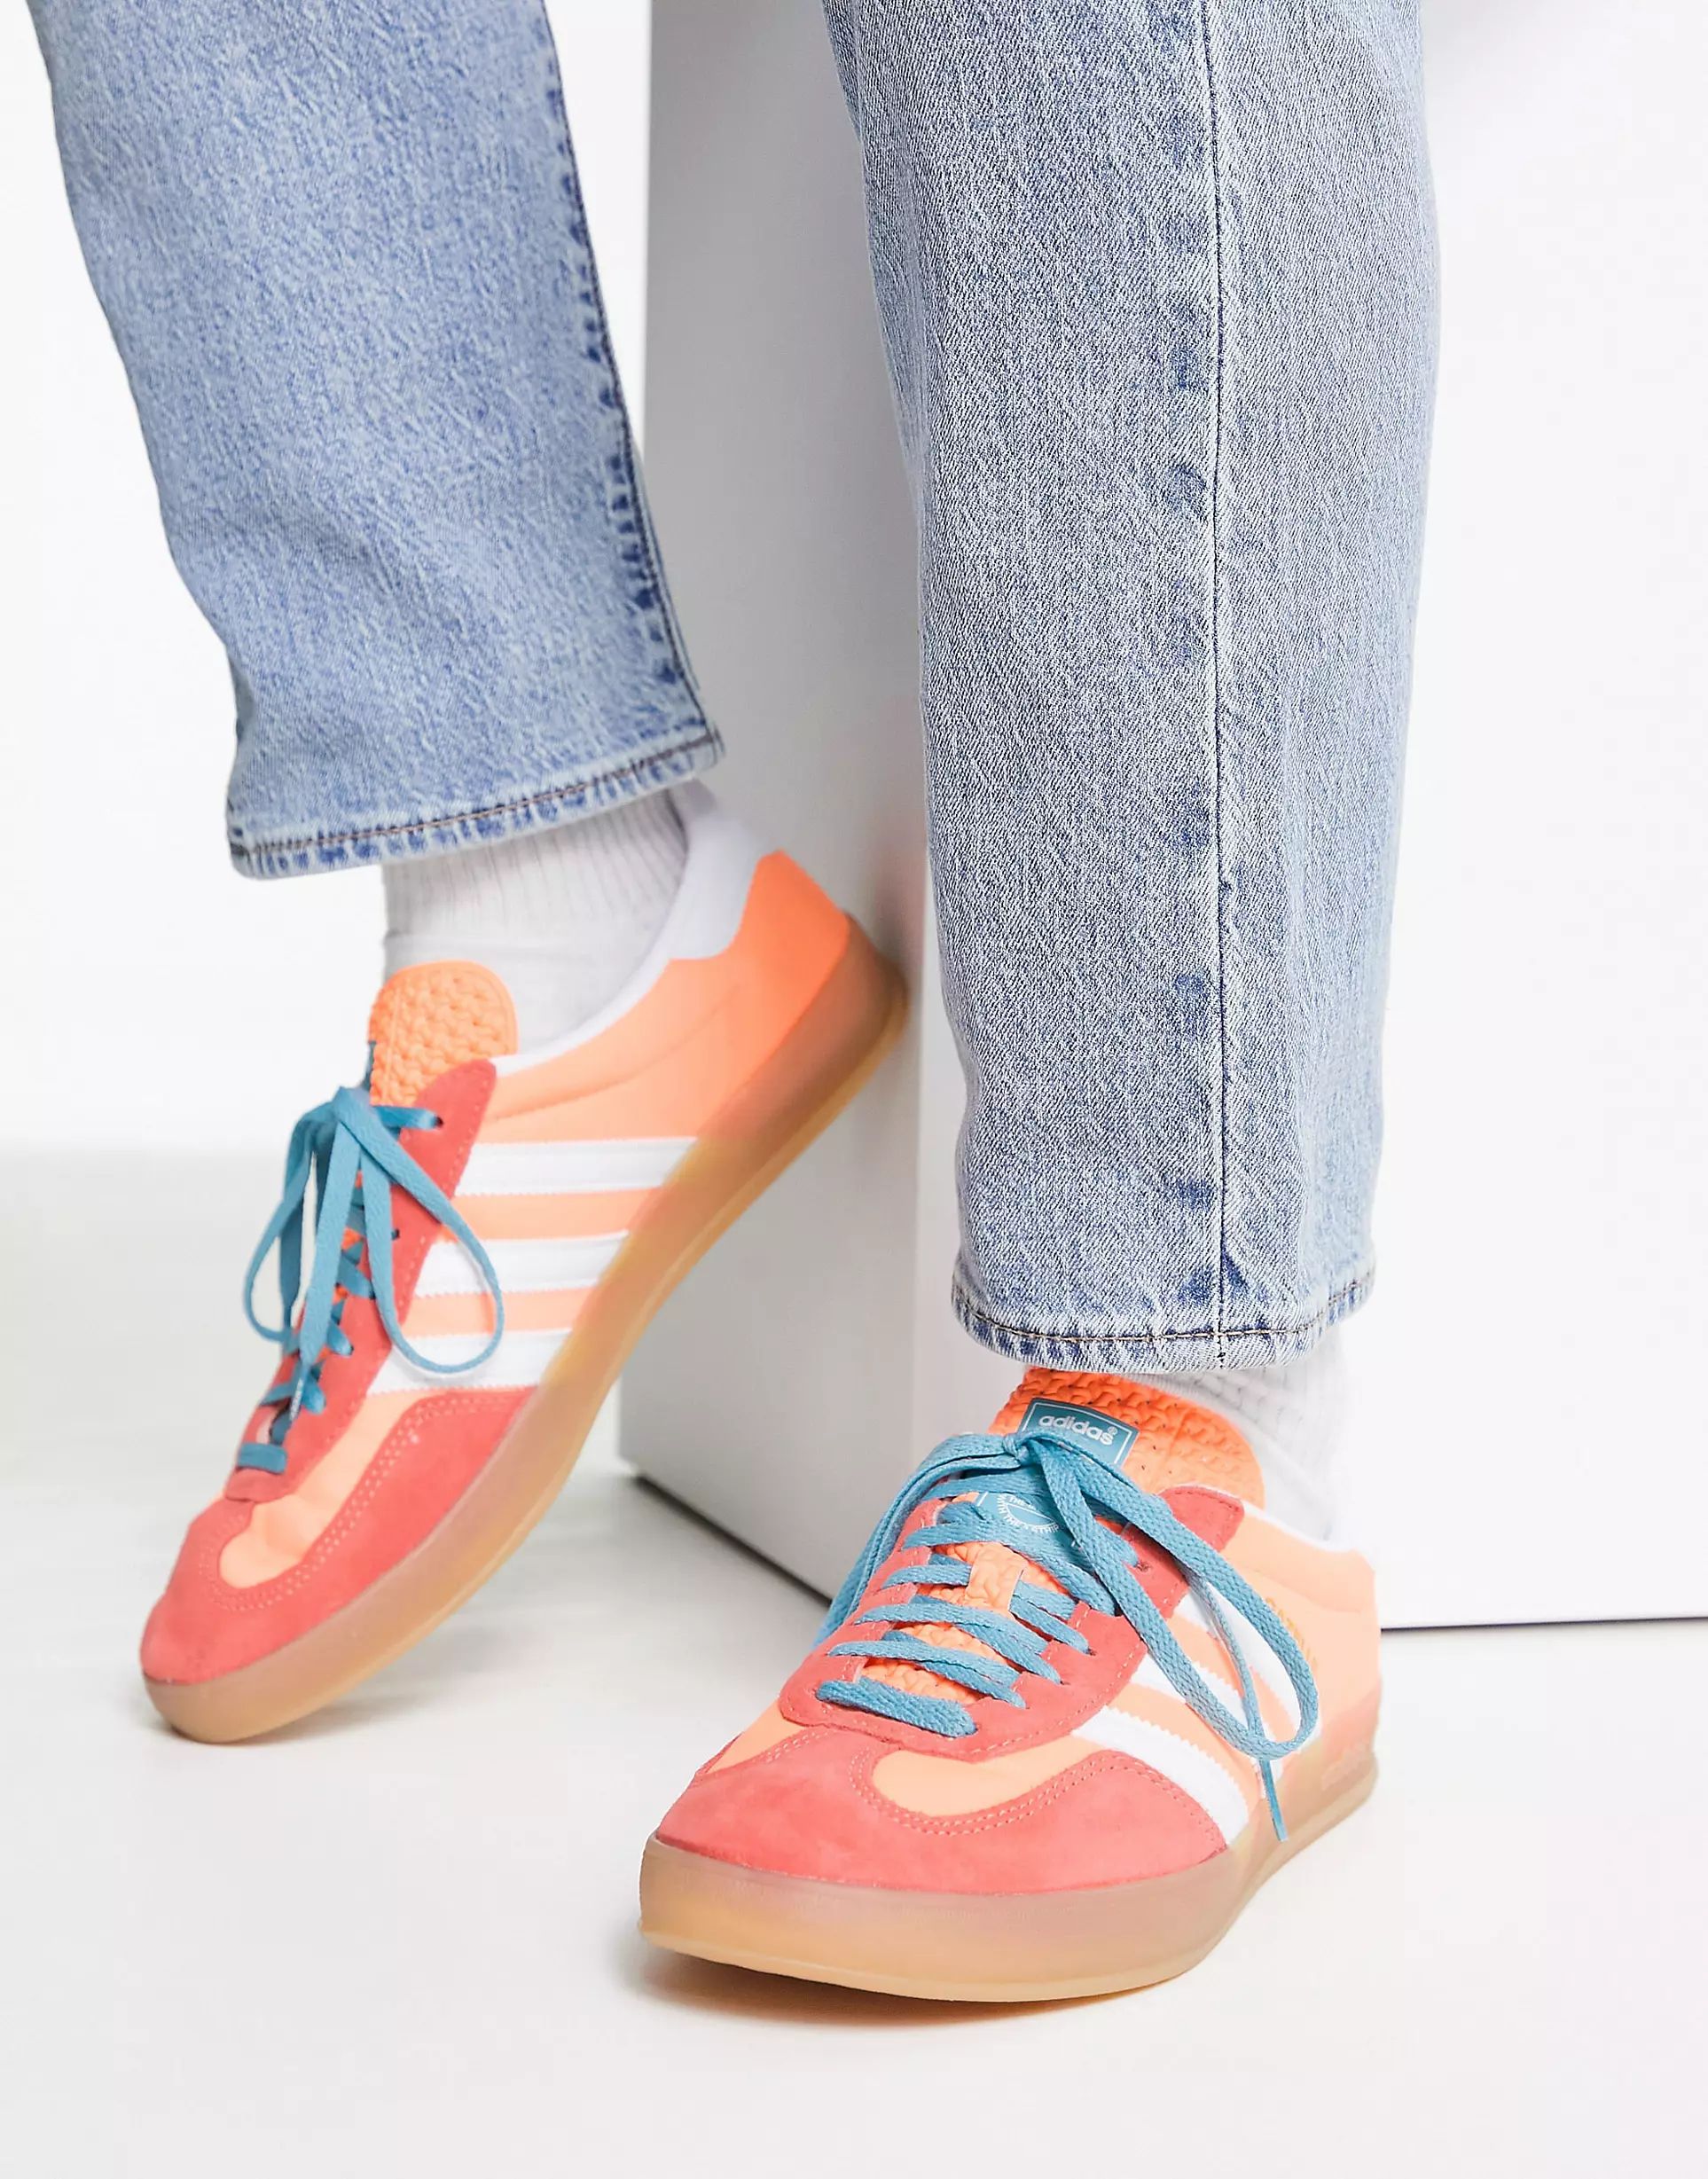 adidas Originals Gazelle Indoor gum sole trainers in orange and white - PEACH | ASOS (Global)